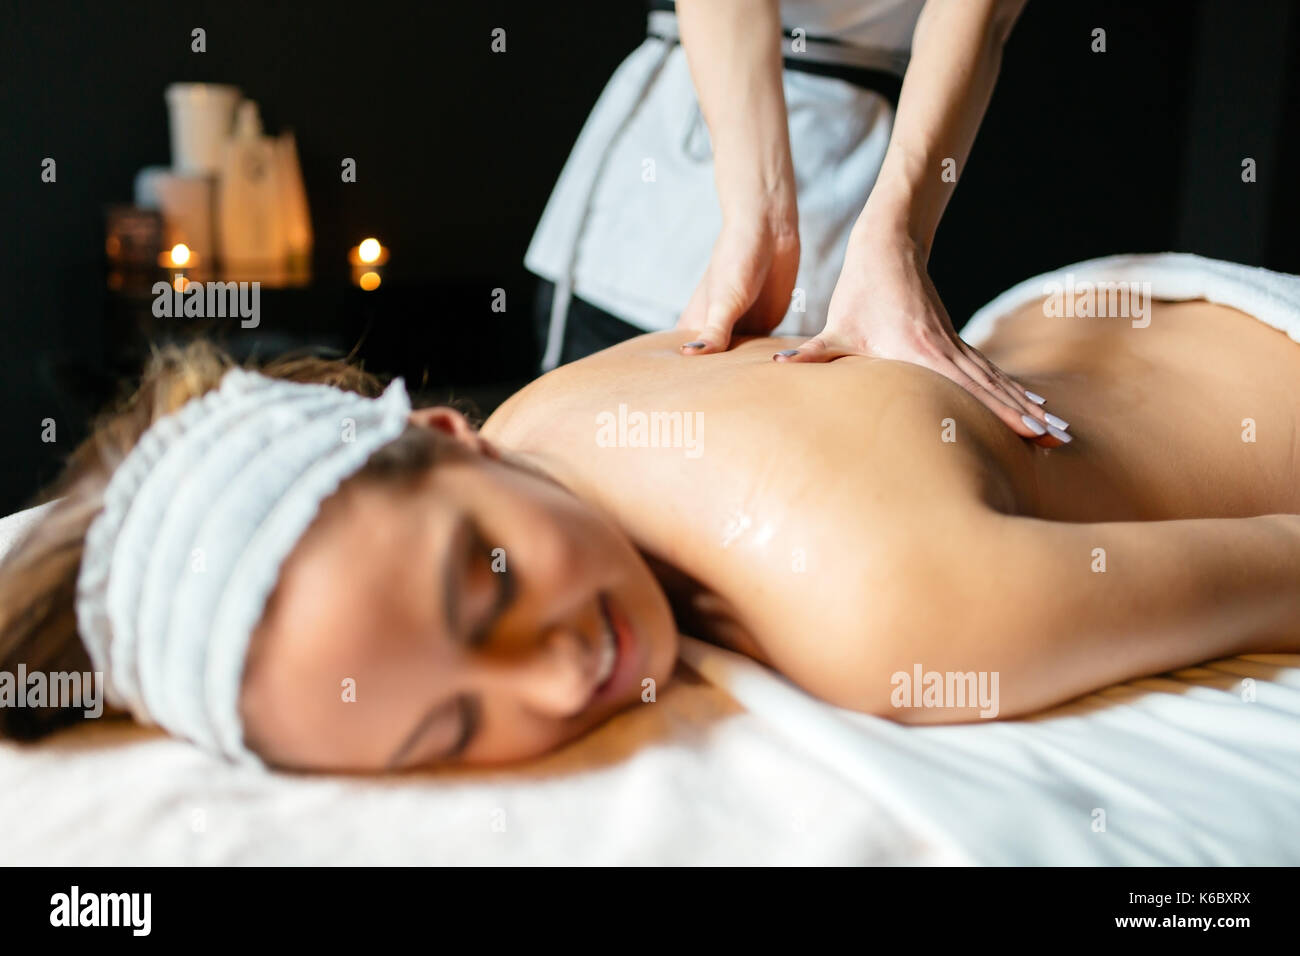 Massage therapist massaging woman Stock Photo